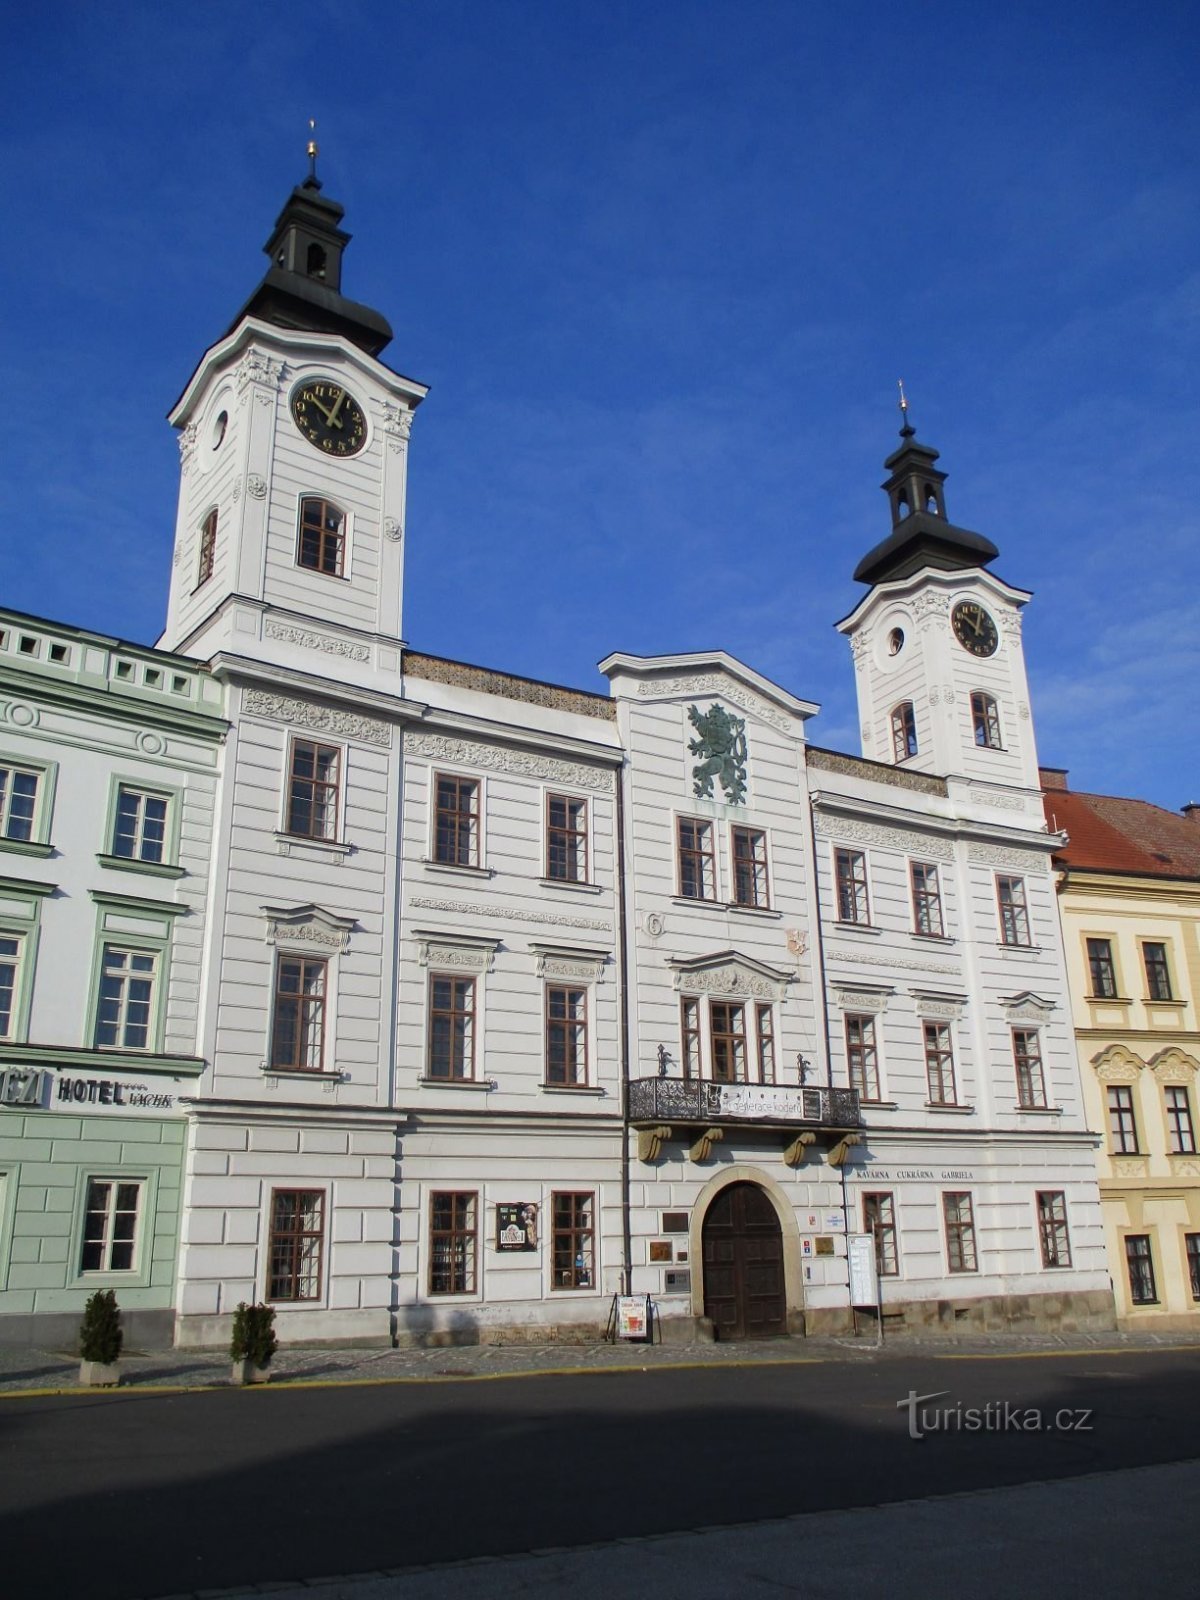 Former town hall No. 1 on Velké náměstí (Hradec Králové, 9.2.2020/XNUMX/XNUMX)